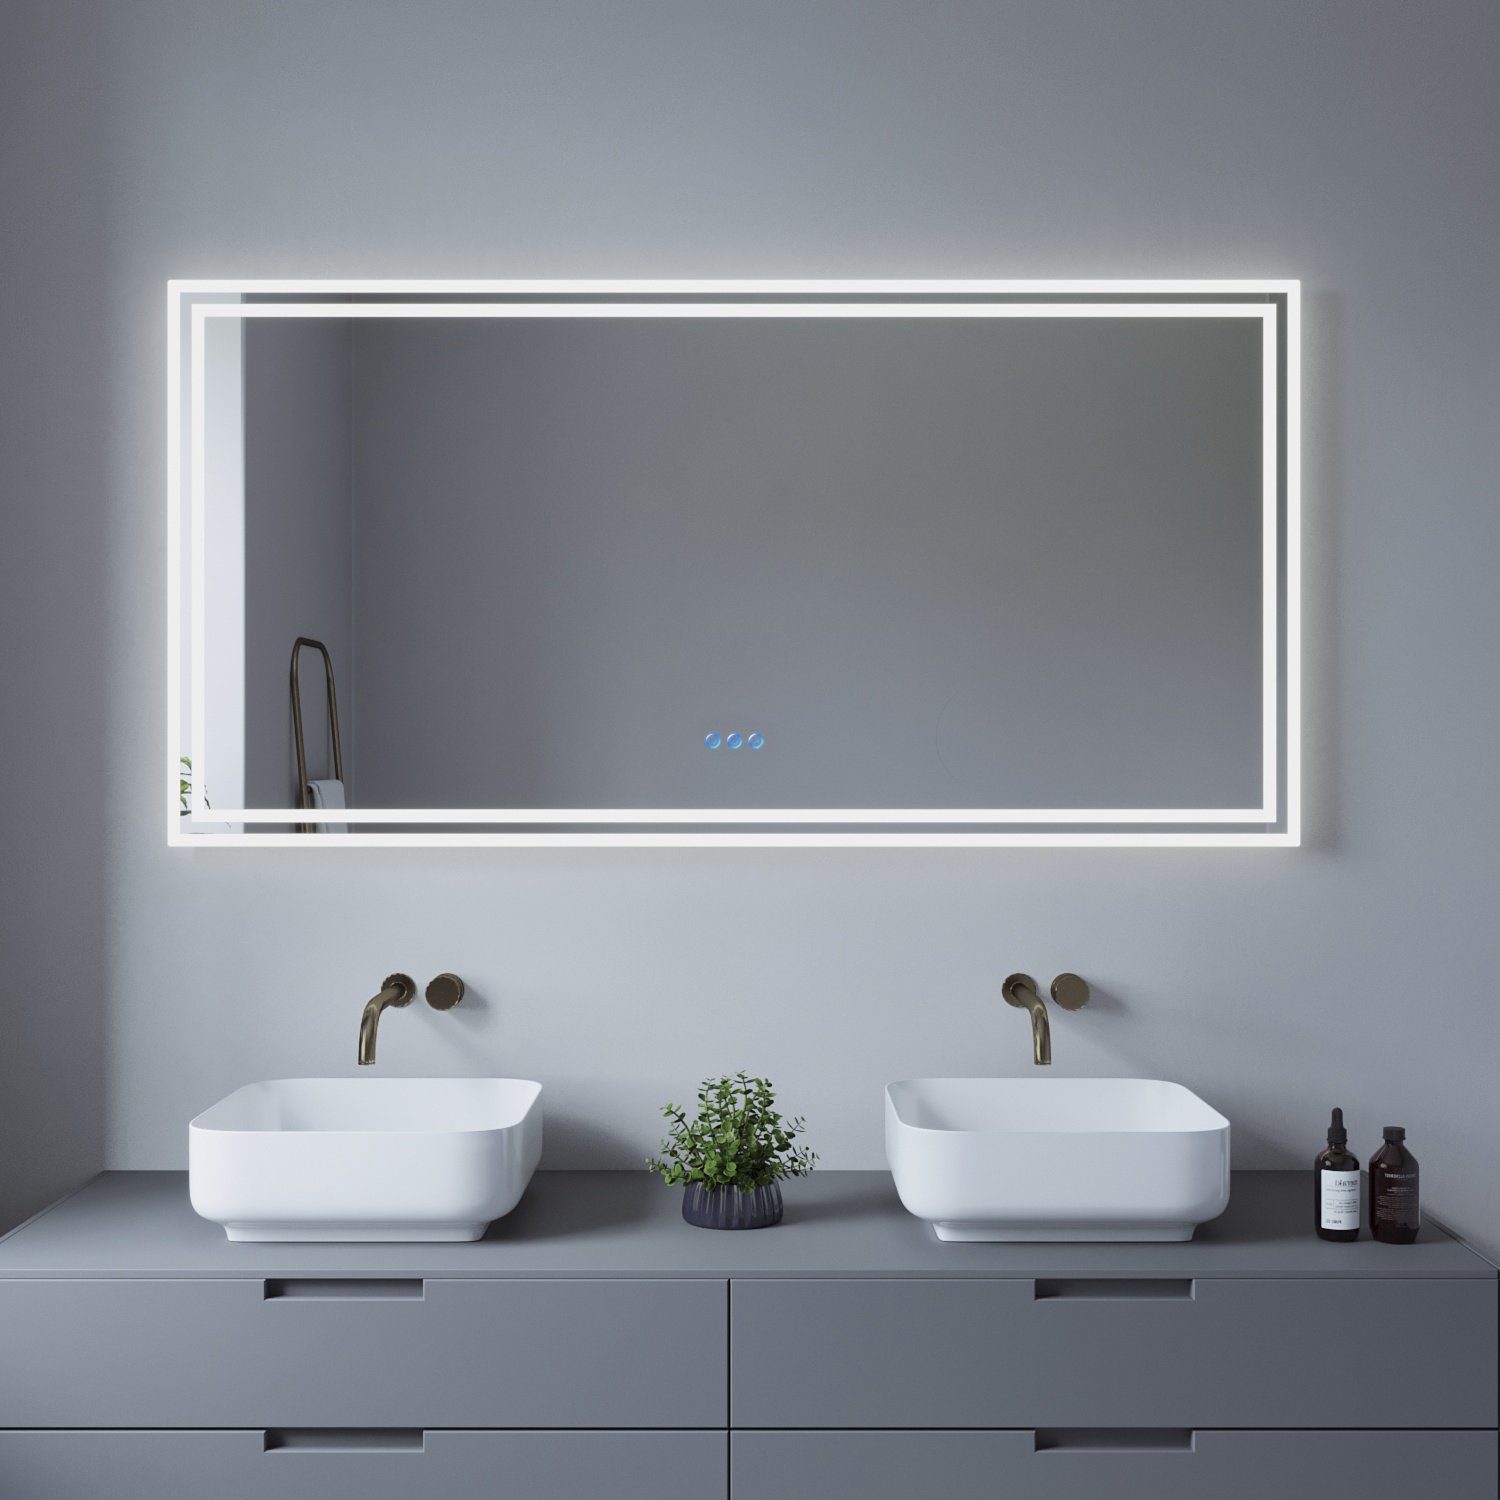 AQUALAVOS Badspiegel LED Badspiegel 140x70 cm Großer Badezimmer Wandspiegel mit Beleuchtung, 6400K Kaltweiß & Warmweiß 3000K, Energiesparend, Touchschalter